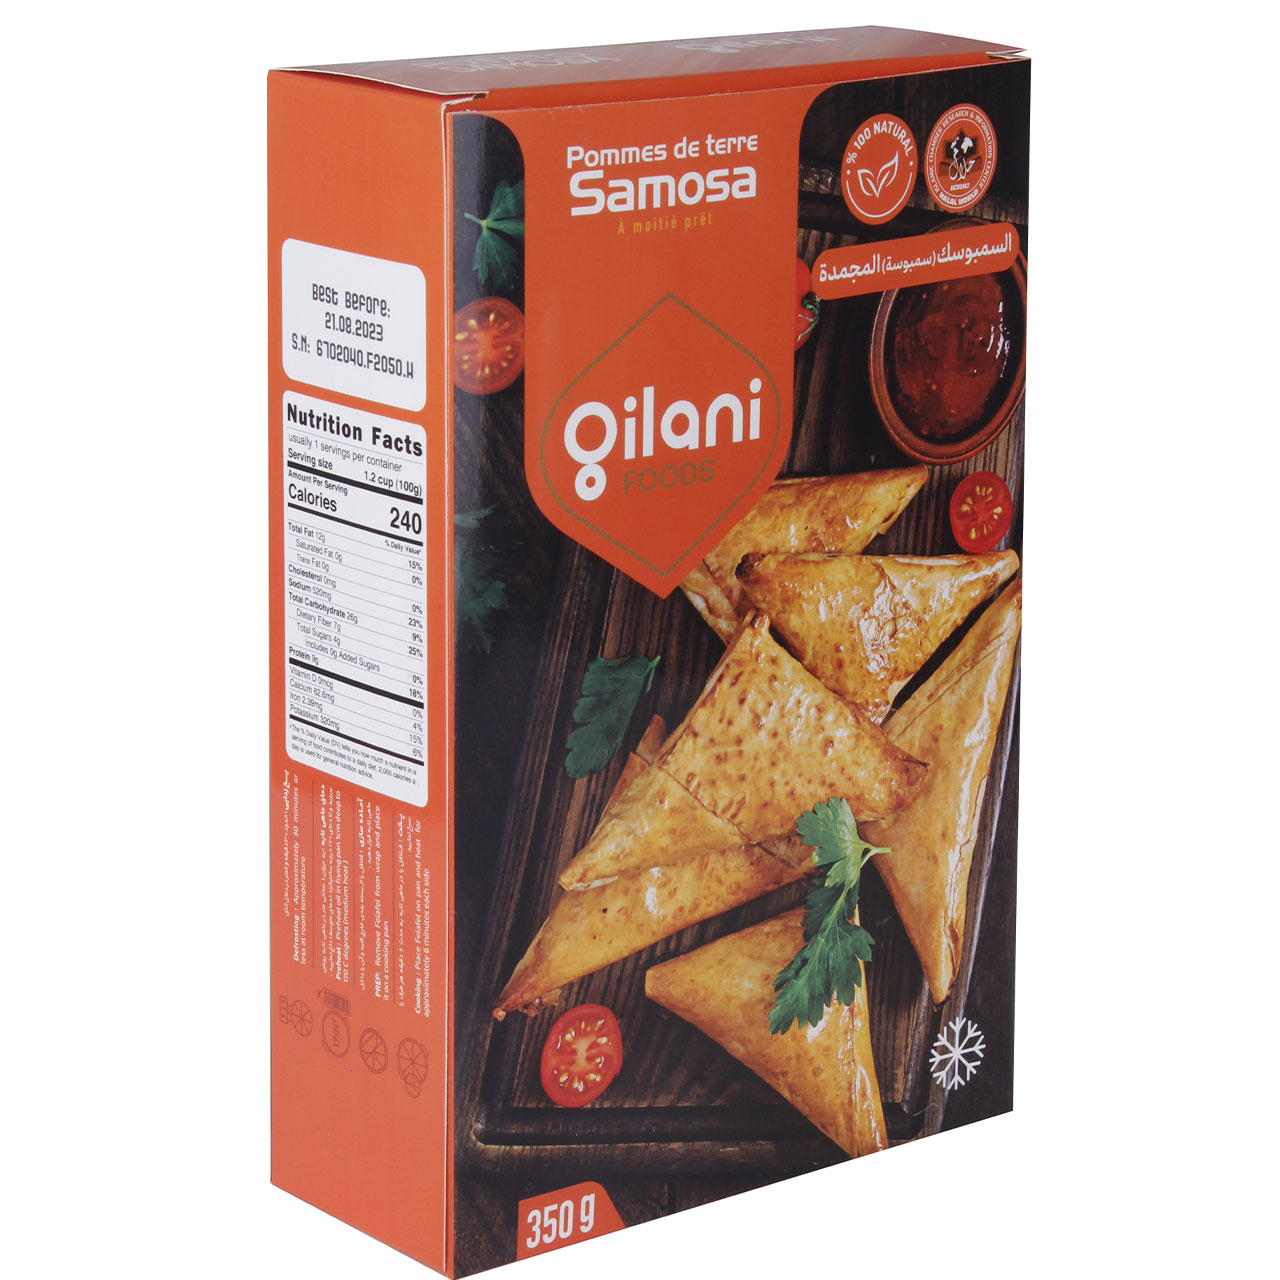 Gilani frozen semi-prepared samosa